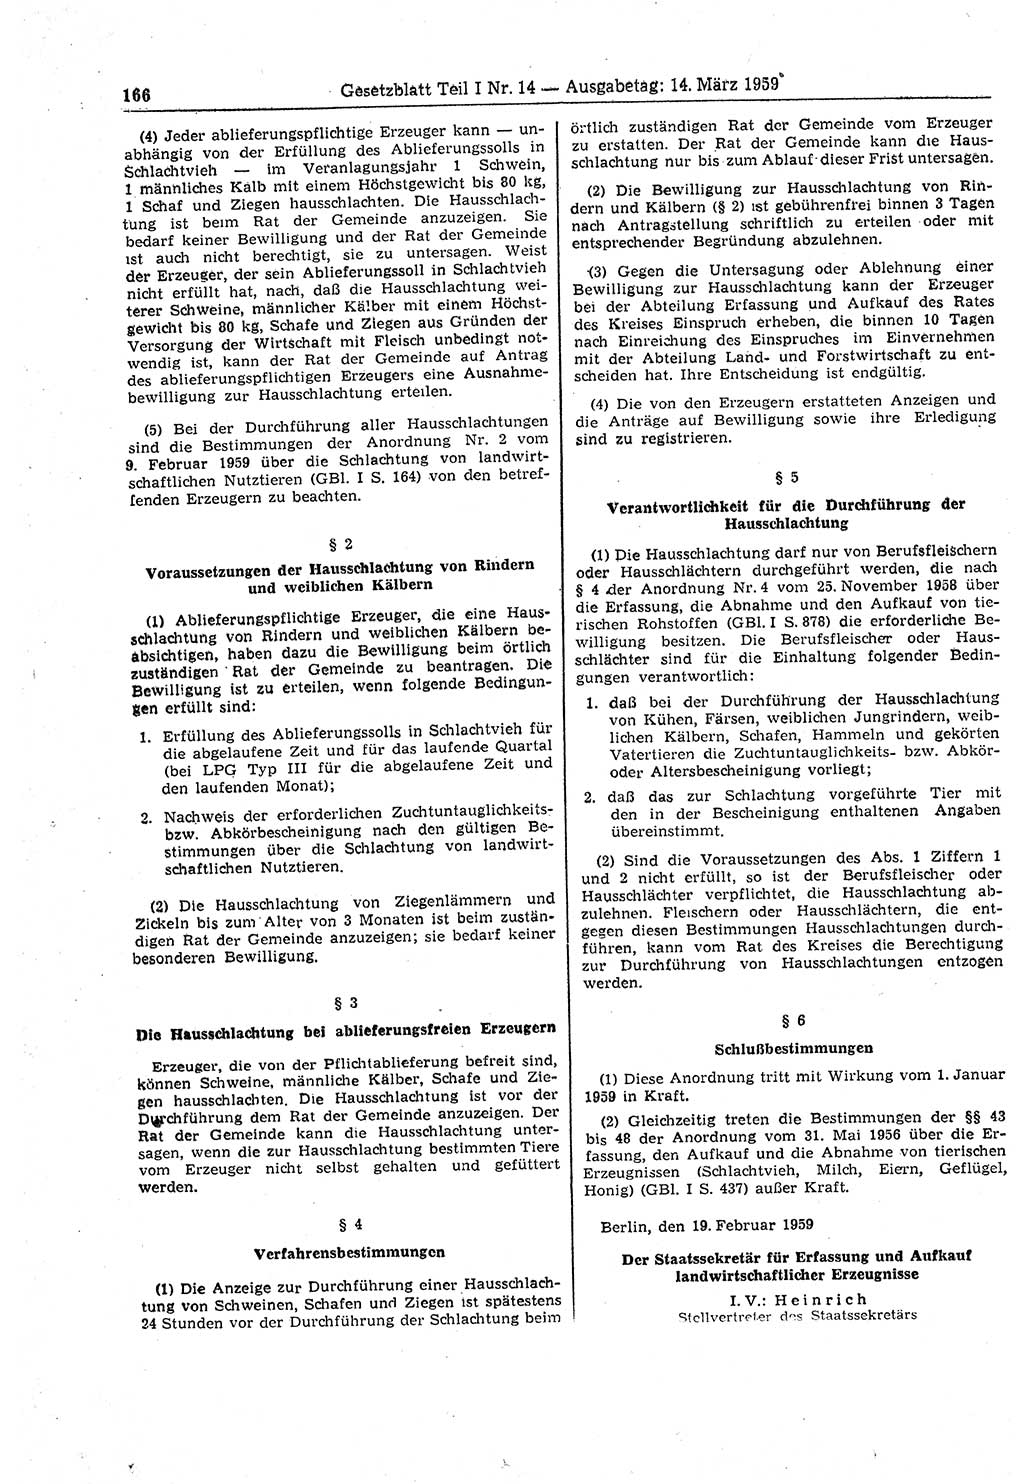 Gesetzblatt (GBl.) der Deutschen Demokratischen Republik (DDR) Teil Ⅰ 1959, Seite 166 (GBl. DDR Ⅰ 1959, S. 166)